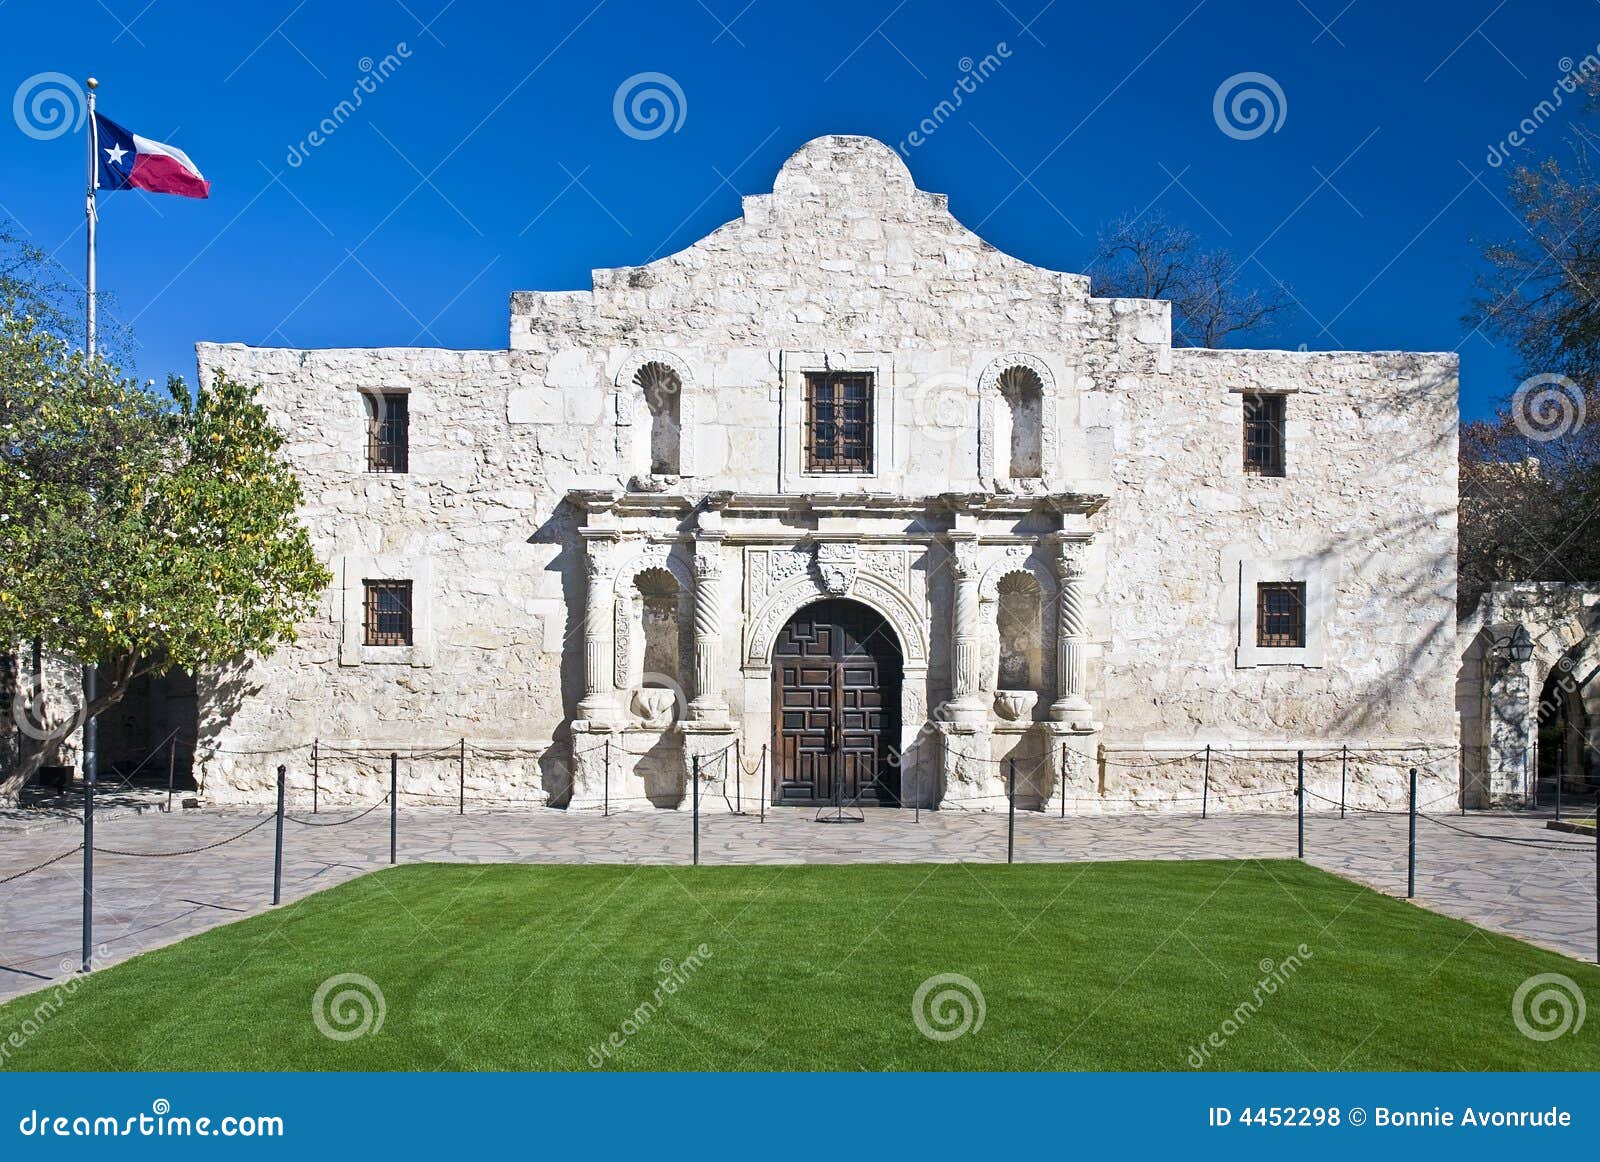 historic alamo san antonio texas